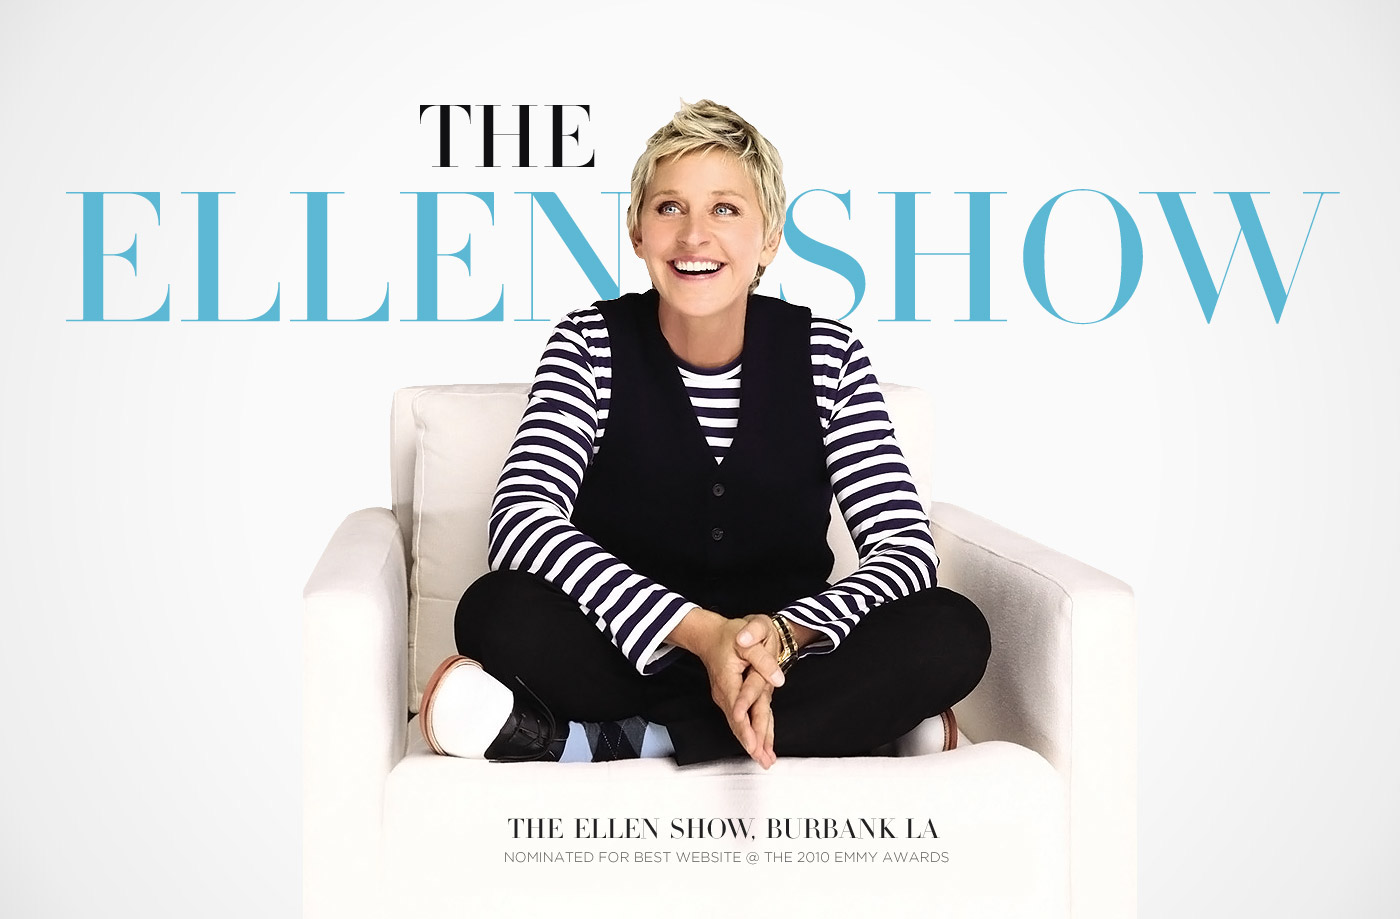 The Ellen Show Website, Warner Bros, Telepictures on Behance
